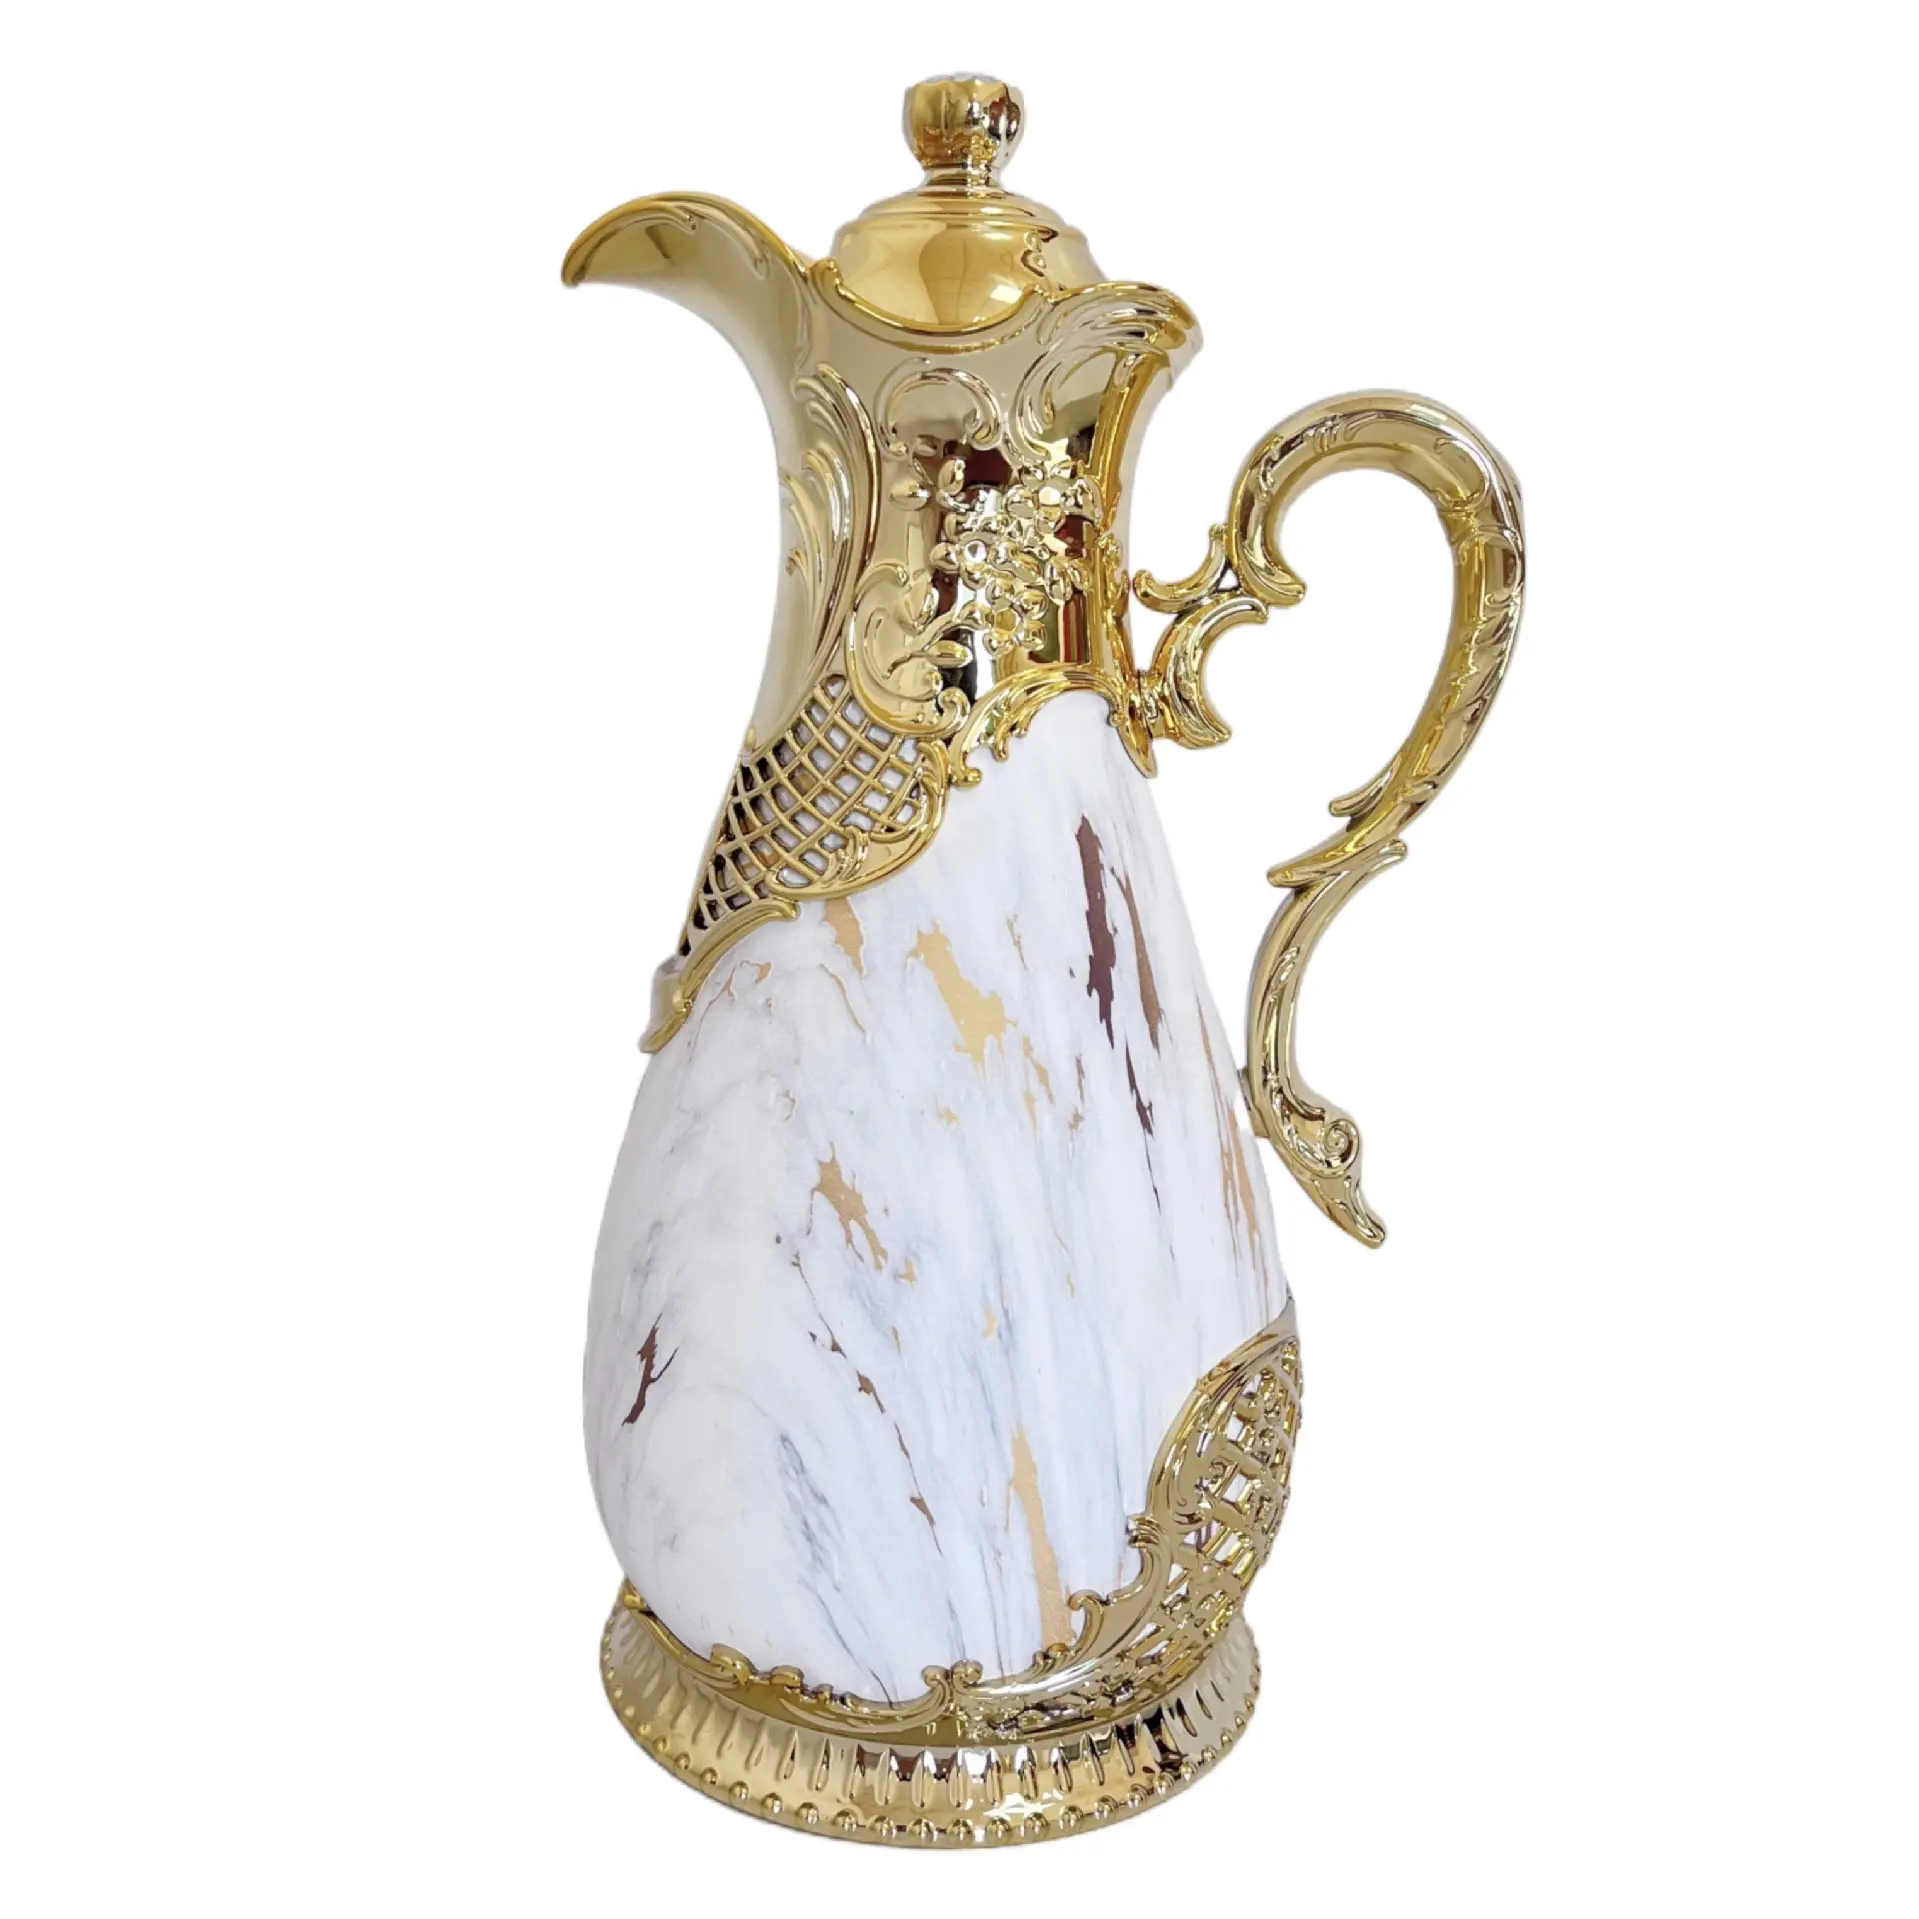 Individuelle isolierte Kaffee-Karaffe, luxuriöse vakuum-isolierte Thermosflasche im arabischen Stil mit Auslauf, Glasfutter weiße Marmorfarbe goldene Farbe